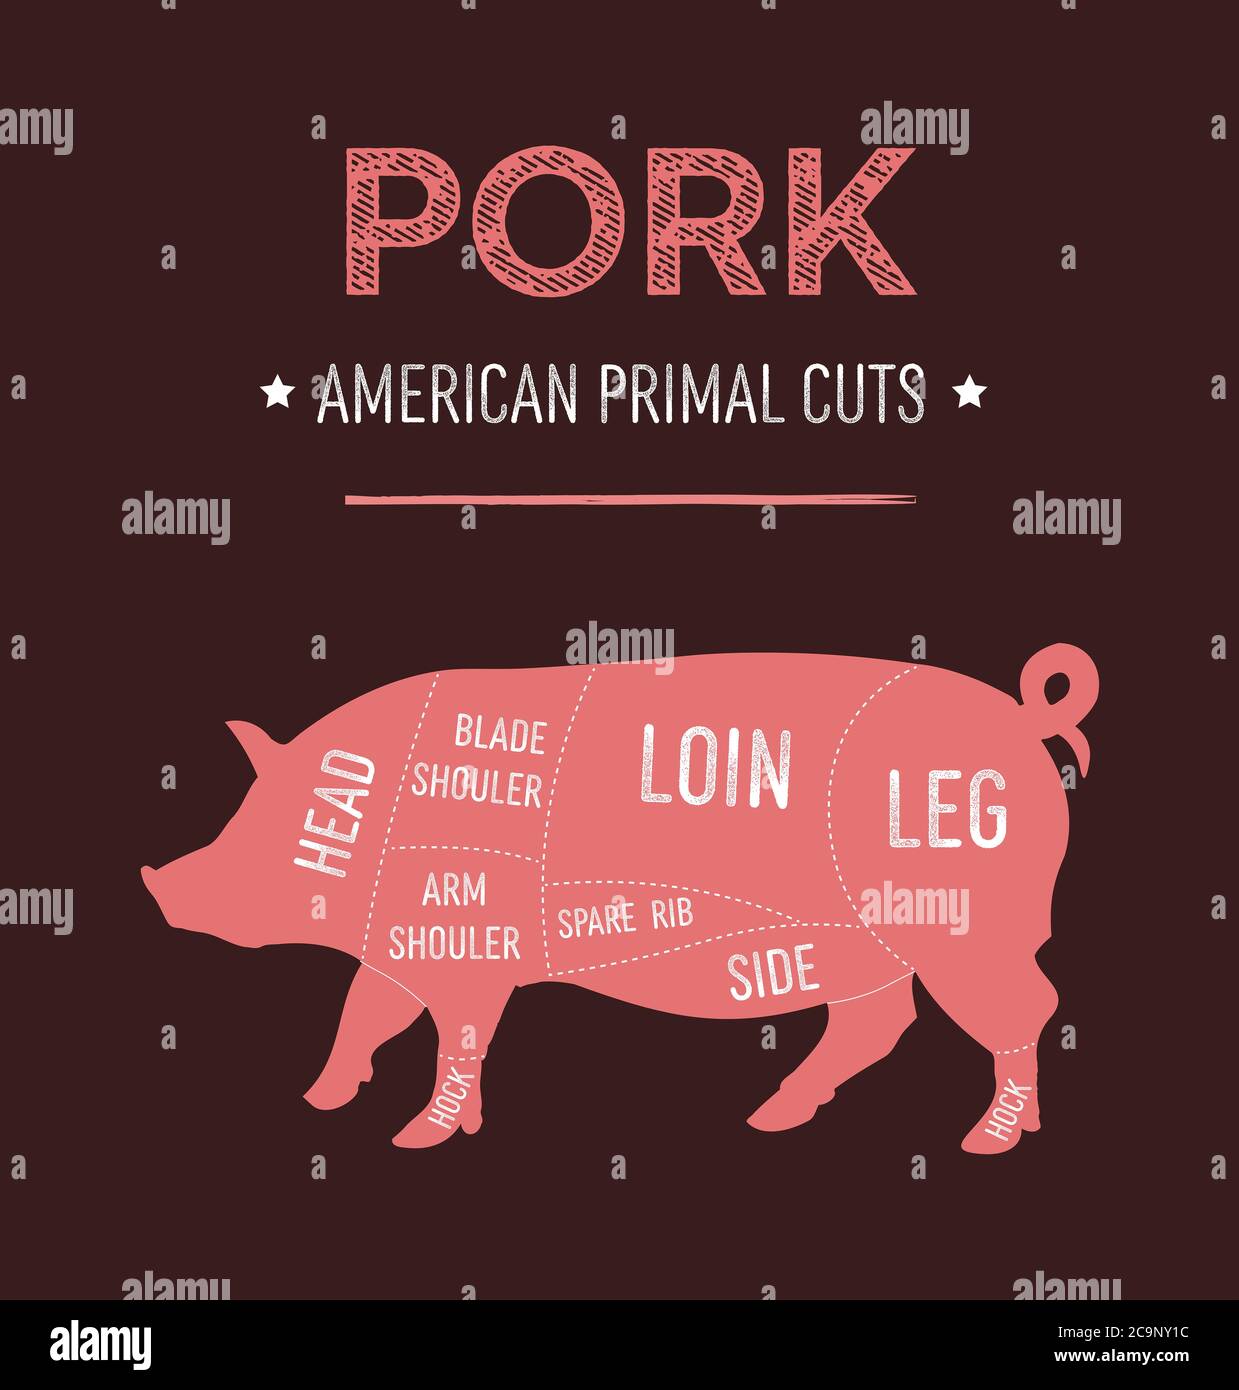 Illustrazione vettoriale del diagramma dei tagli primordiali di carne di maiale americana, schema degli Stati Uniti per macellaio Foto Stock